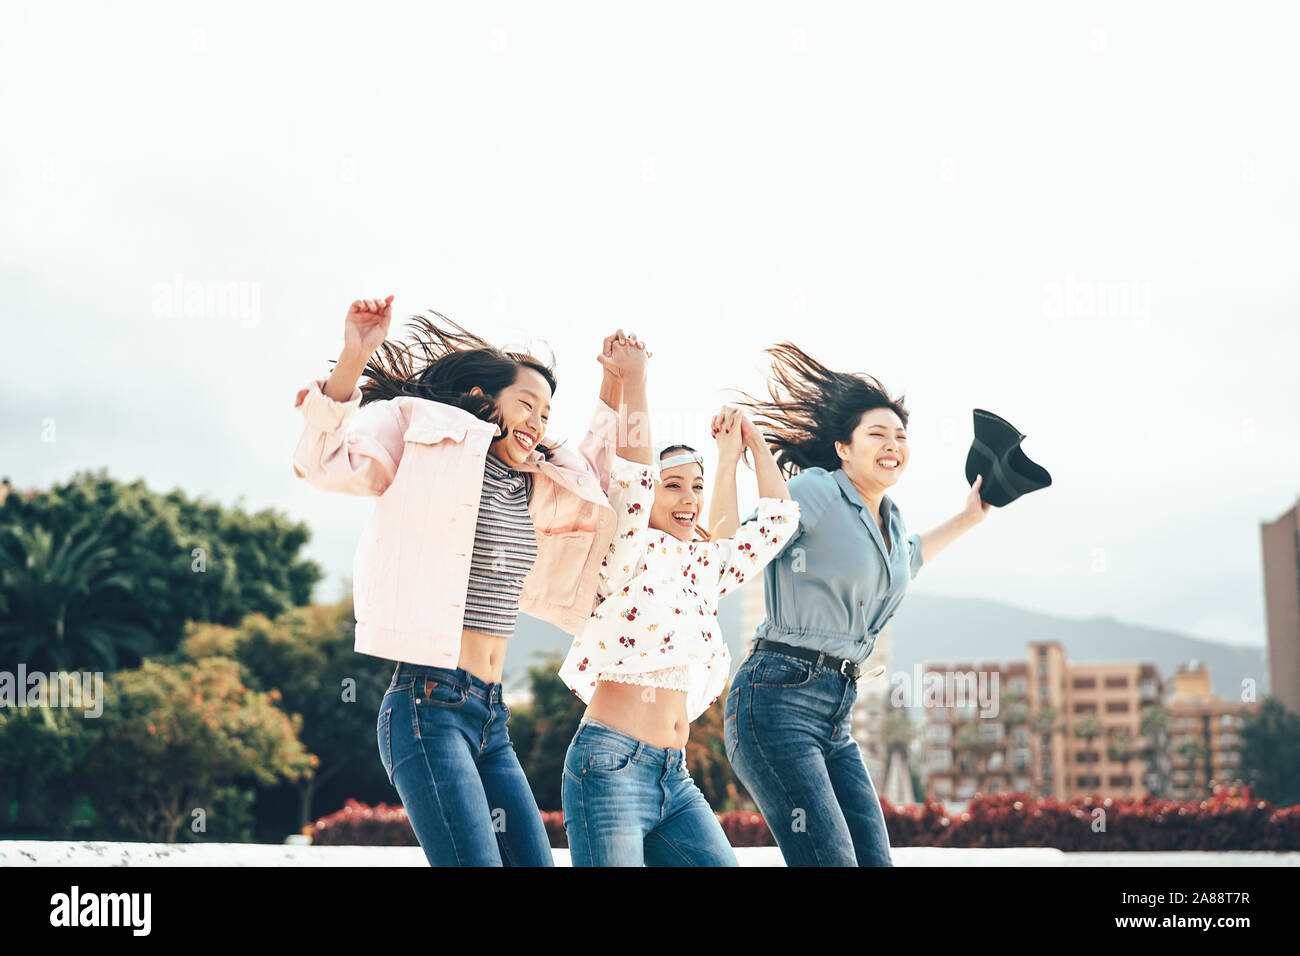 Gerne asiatische Mädchen springen zusammen Outdoor - junge Frauen Freunde Spaß während der Pause tanzen und feiern außerhalb Stockfoto